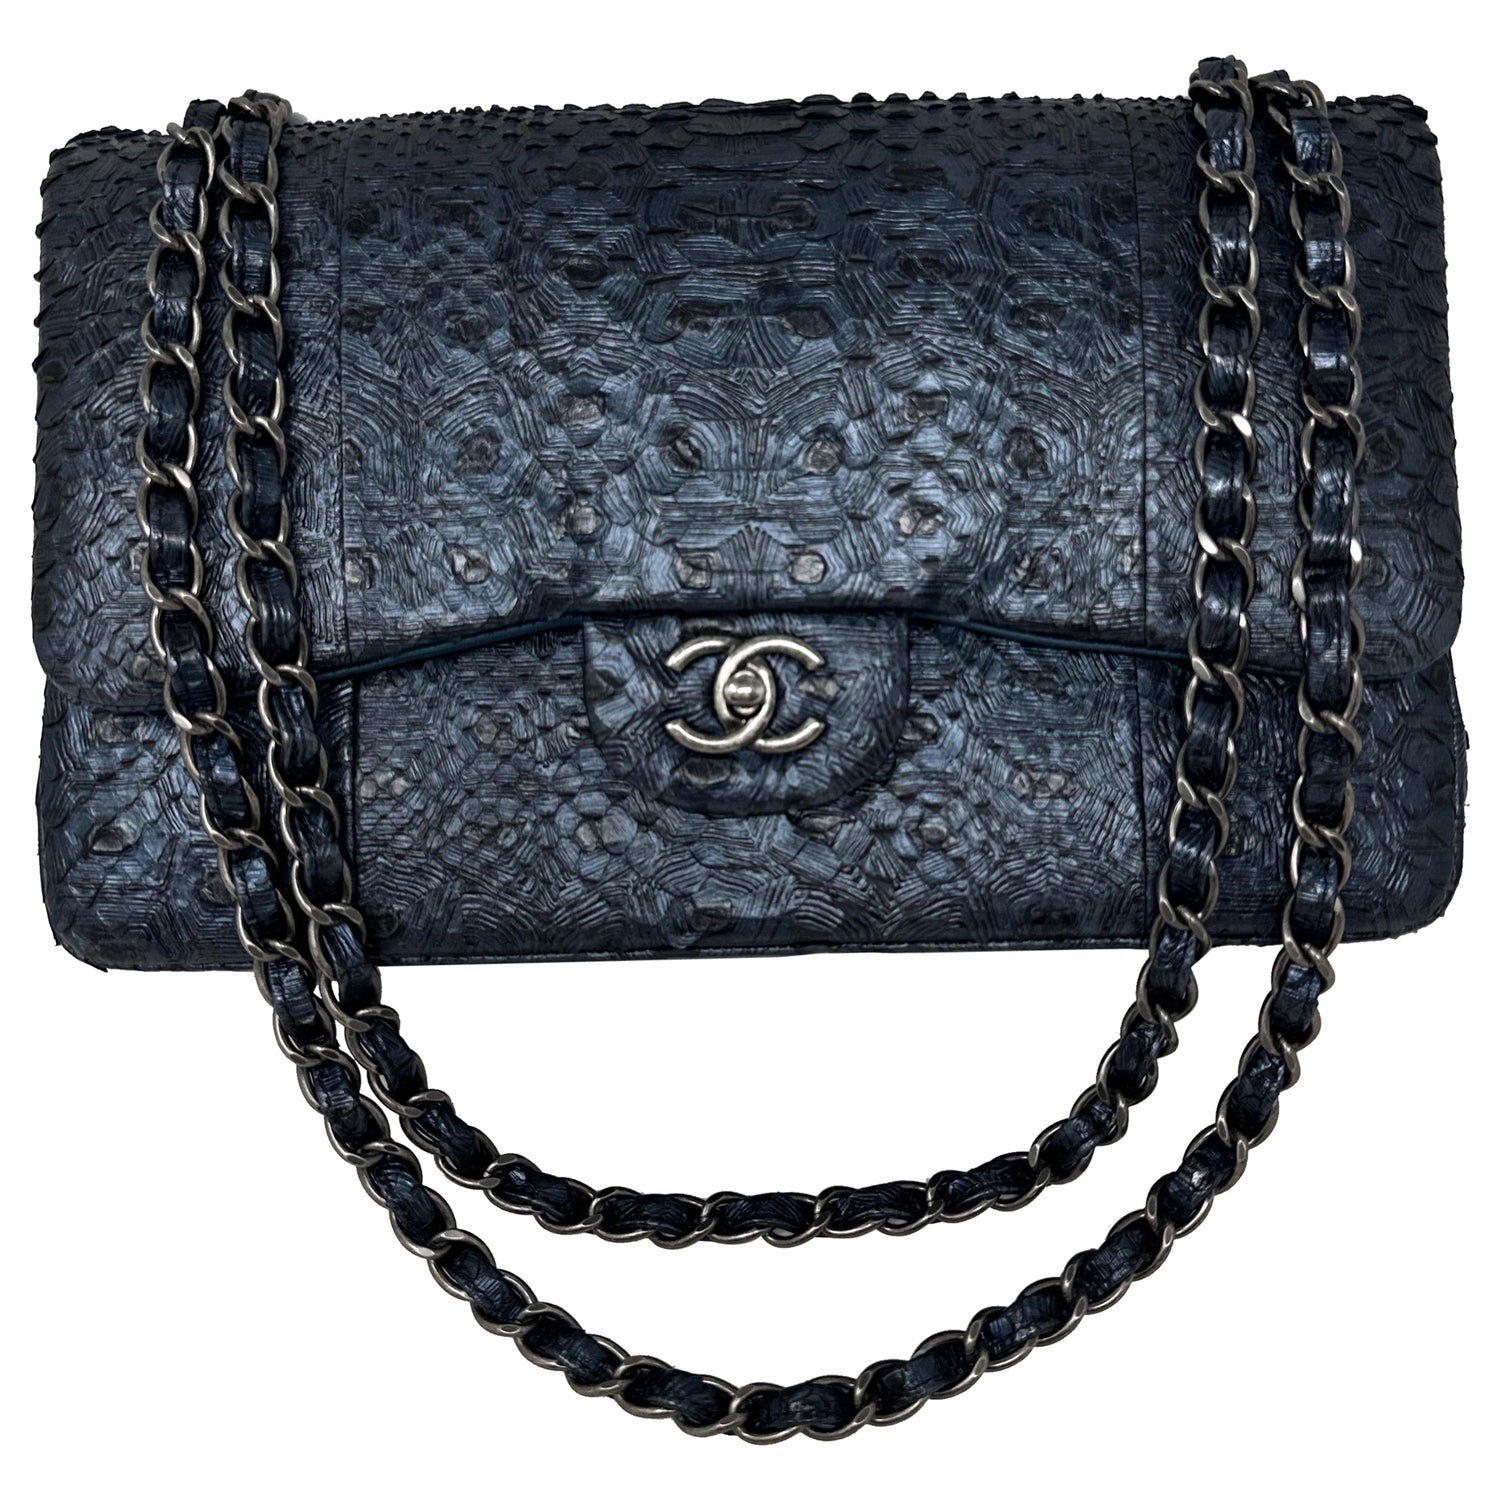 Chanel Python Jumbo - 3 For Sale on 1stDibs  chanel python bag price, python  chanel, chanel python skin bag